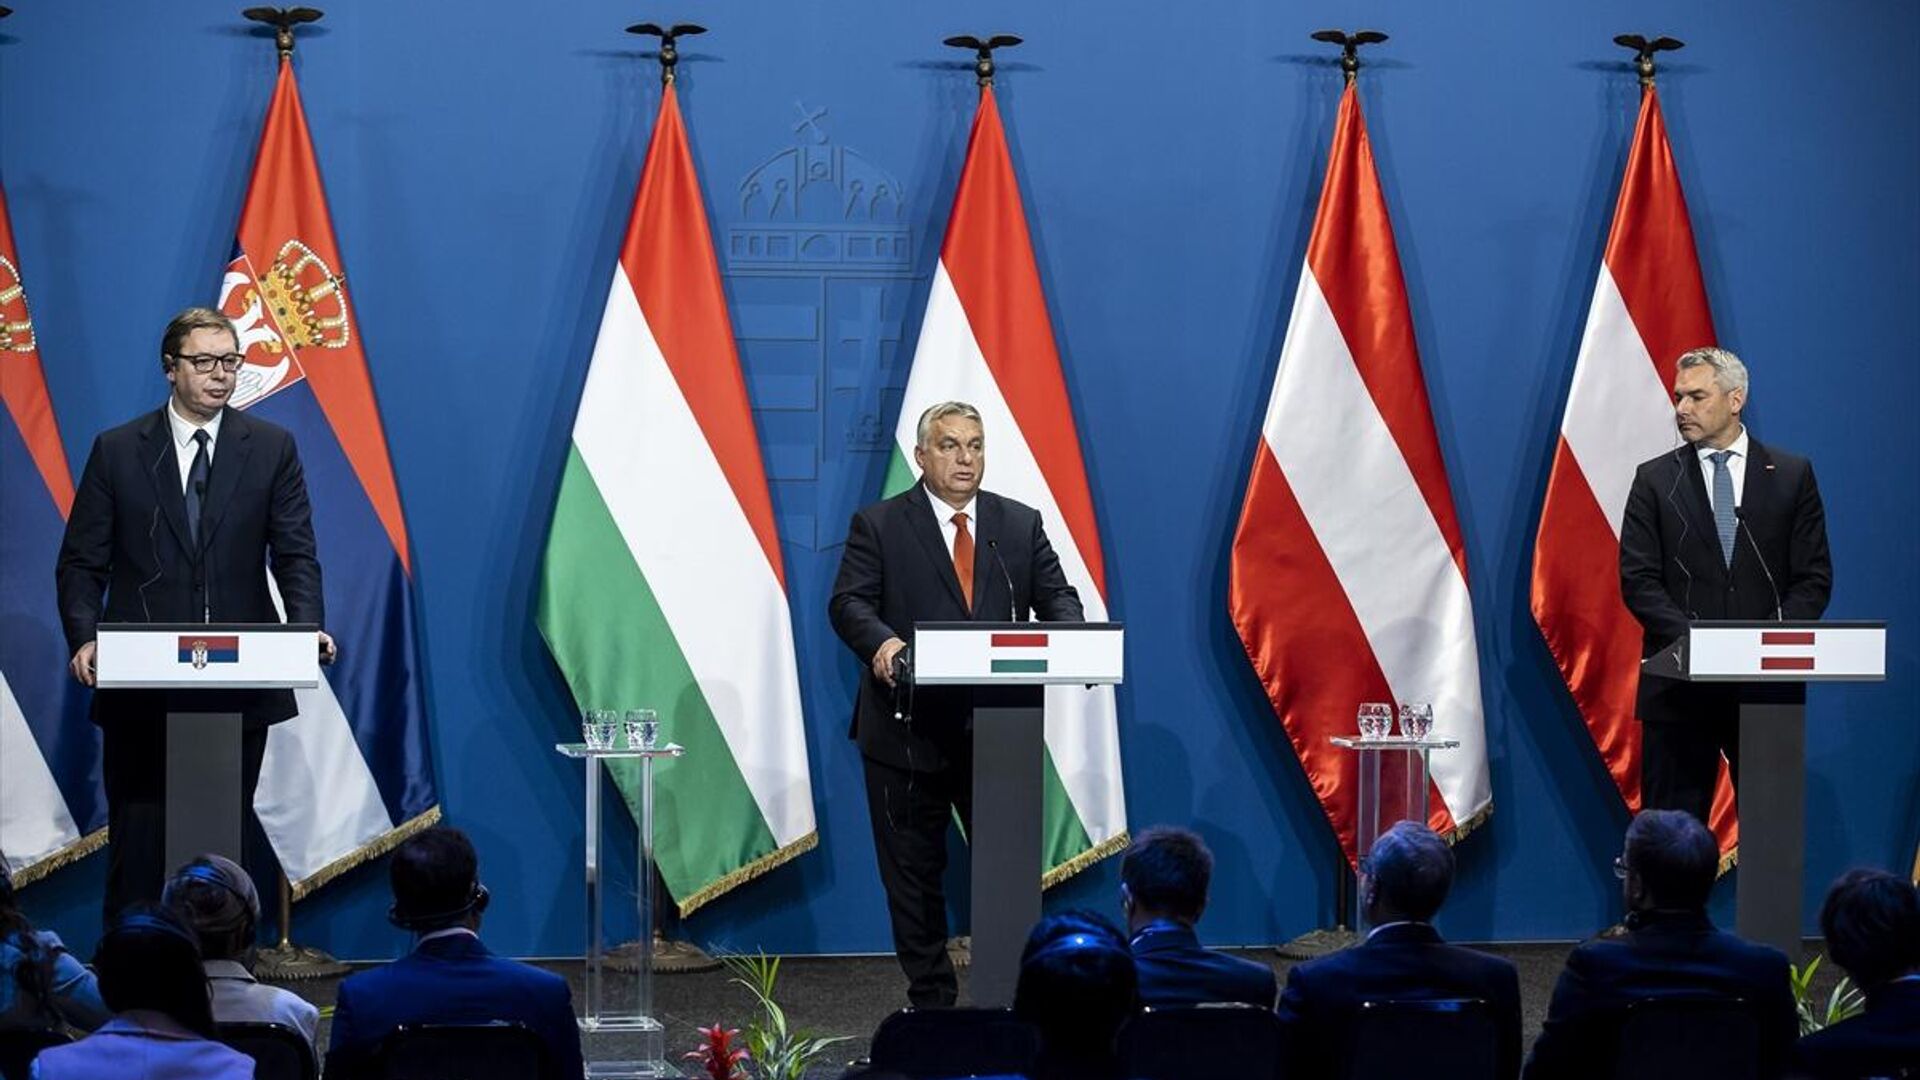 Macaristan, Avusturya ve Sırbistan yasa dışı göçe karşı iş birliğini artıracak